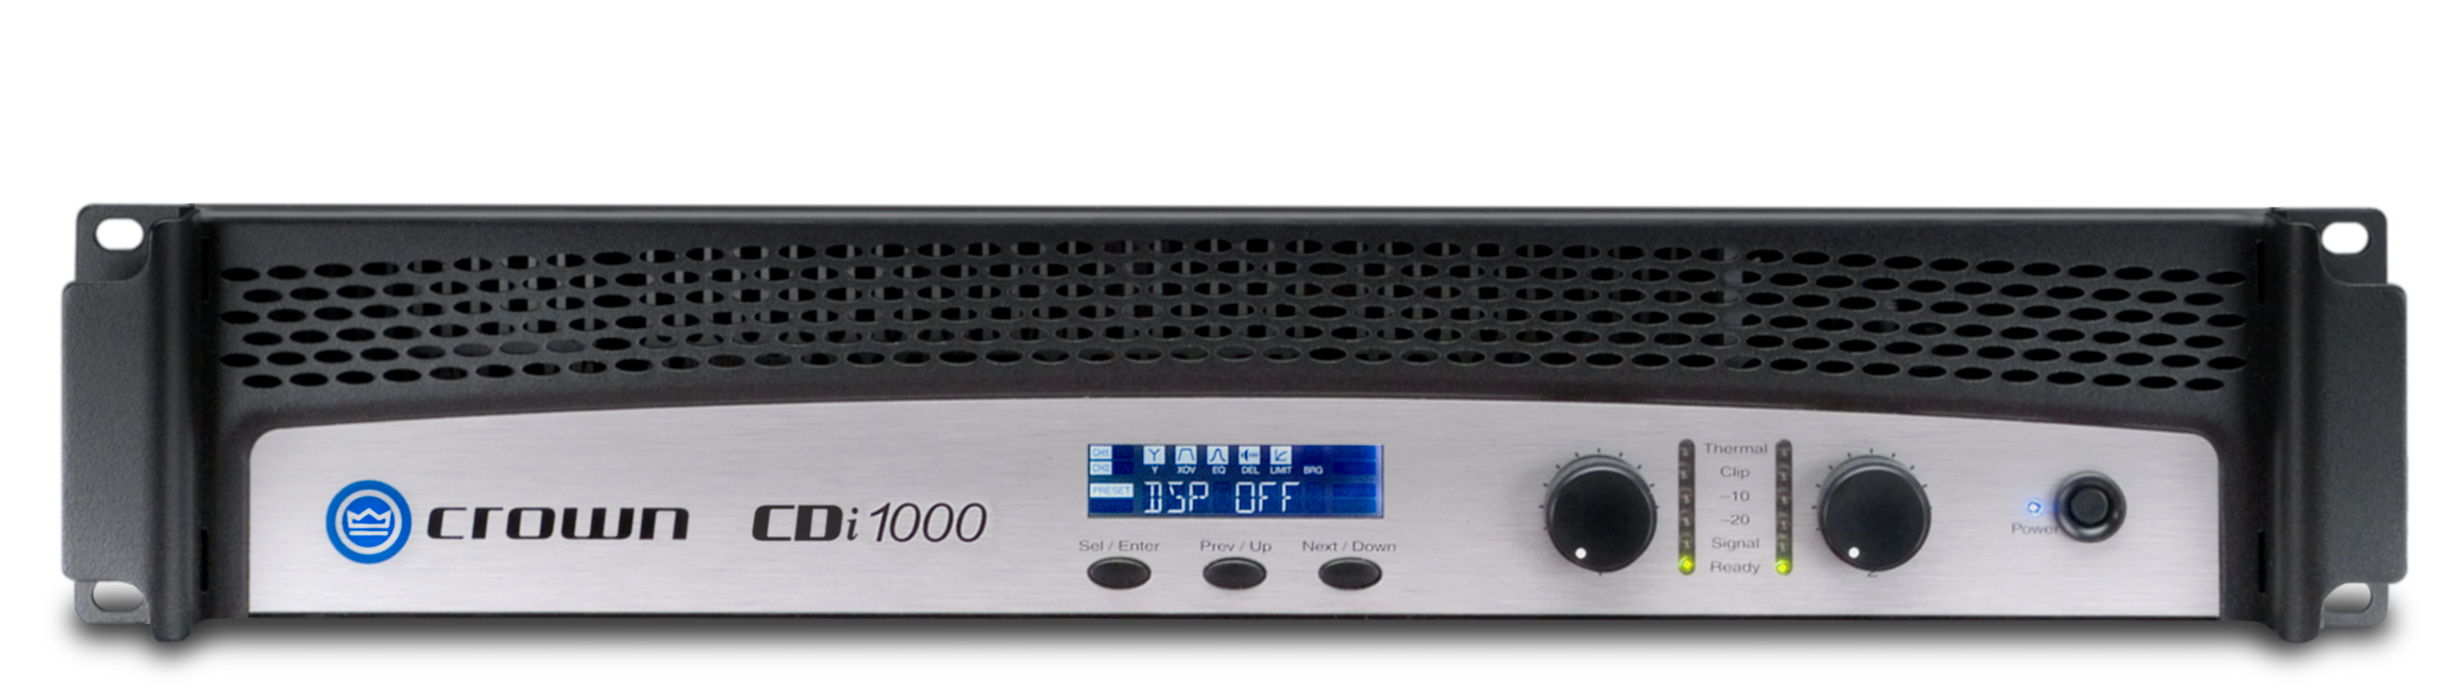 Crown CDI 1000 - Amplificateur de puissance commercial 2 canaux 500W 4 Ohms, 8 Ohms : 2 x 275 W ou 2 Ohms : 2 x 700 W* et 2 x 500 70Vrms, extrêmement polyvalent, il peut être bridgé pour atteindre 1400W